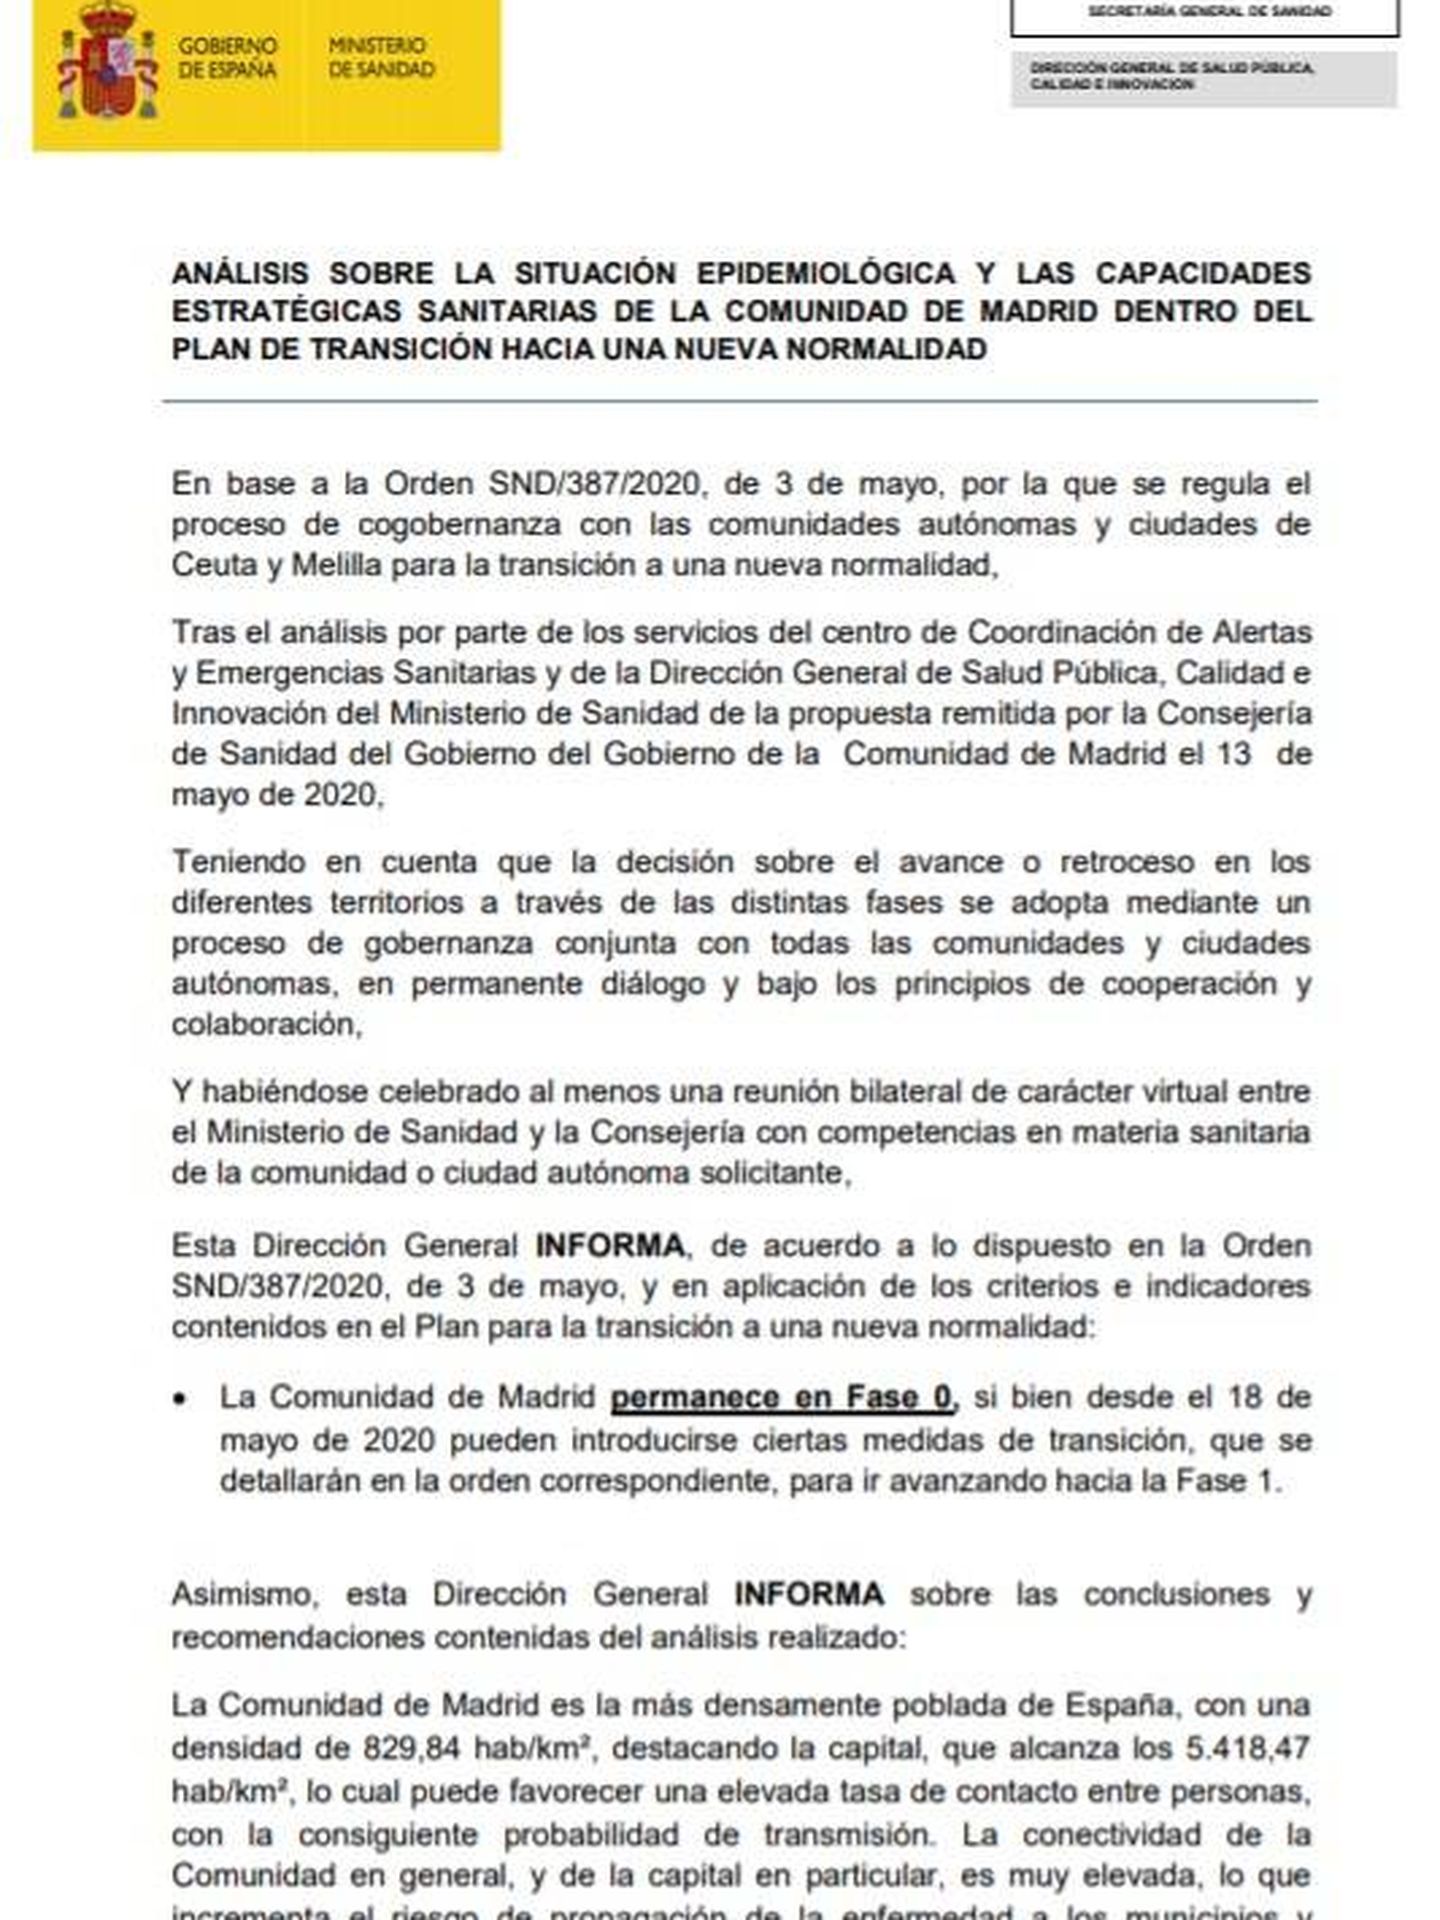 Consulte aquí en PDF el informe del Ministerio de Sanidad sobre la Comunidad de Madrid de 15 de mayo. 